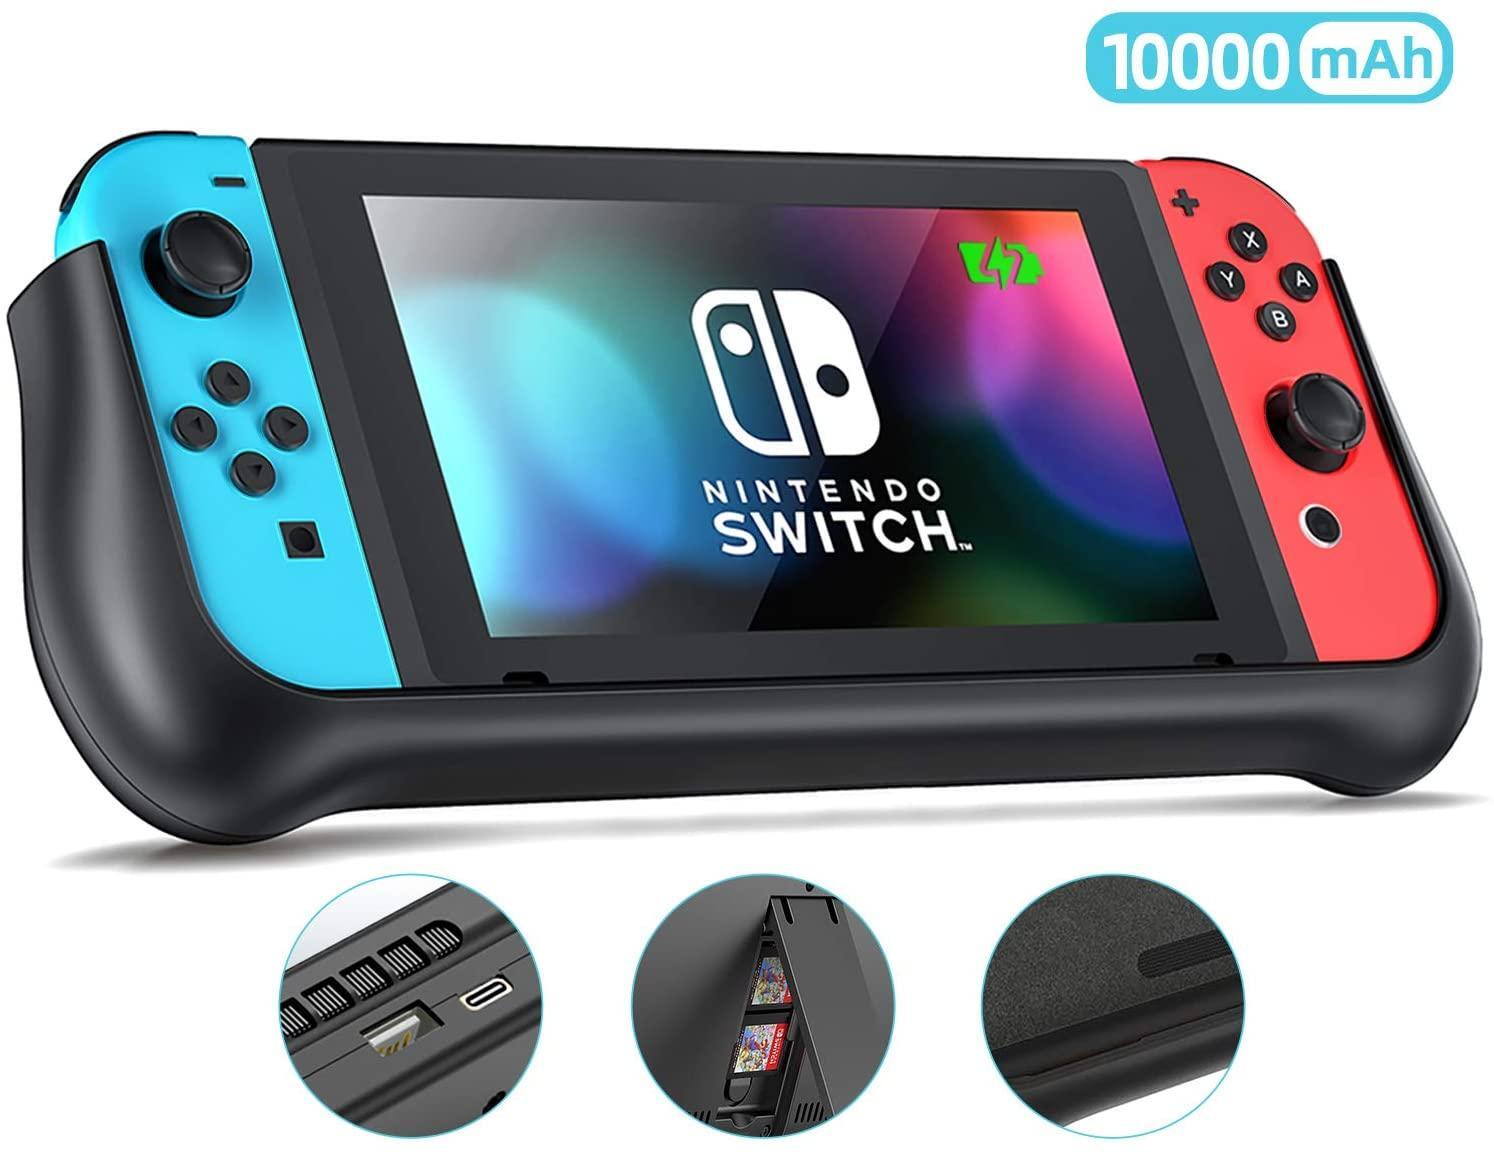 Bærbar oplader kompatibel med Nintendo Switch - sort | Elgiganten